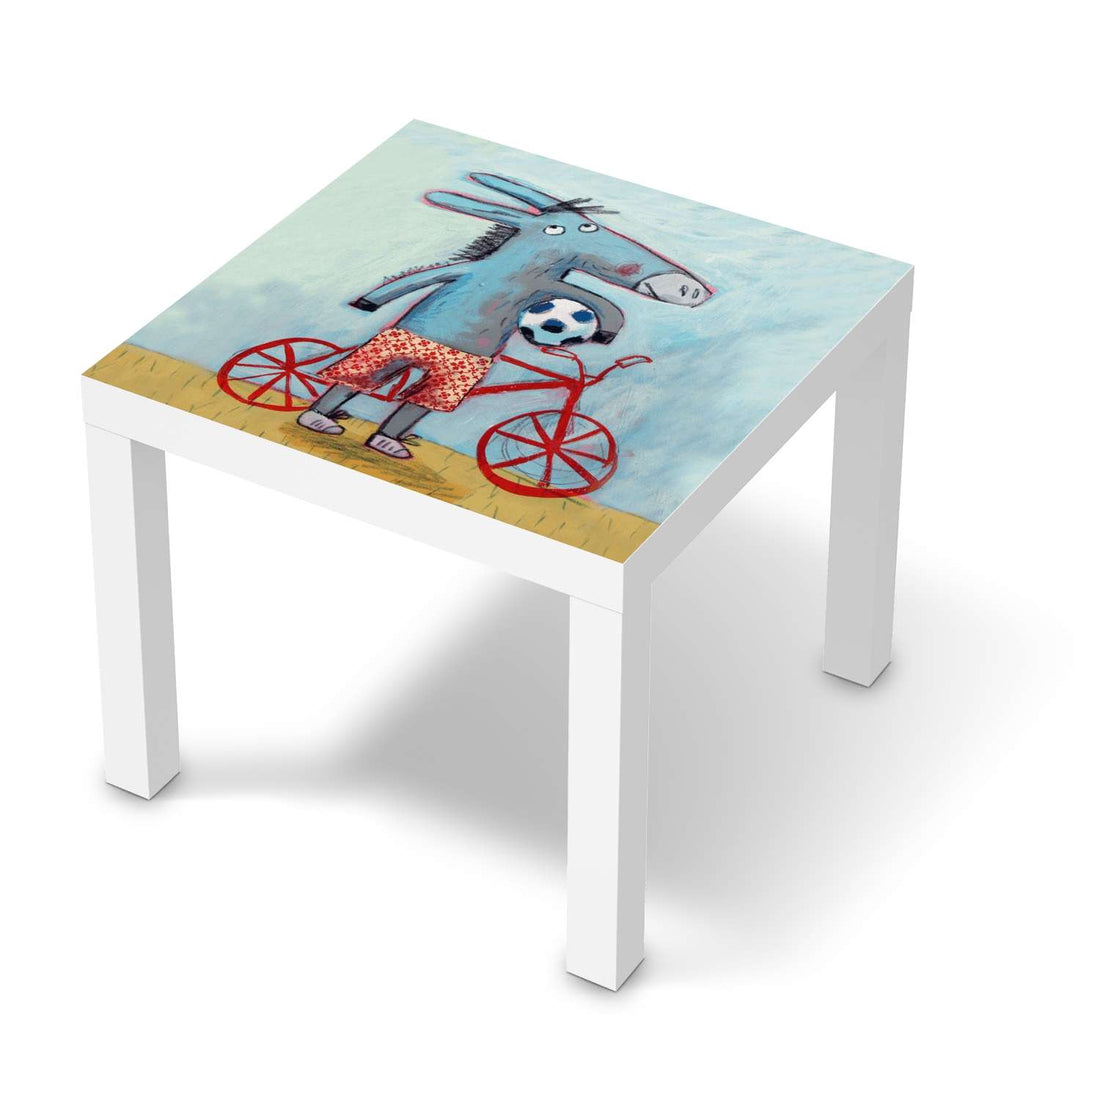 Möbelfolie Esel - IKEA Lack Tisch 55x55 cm - weiss